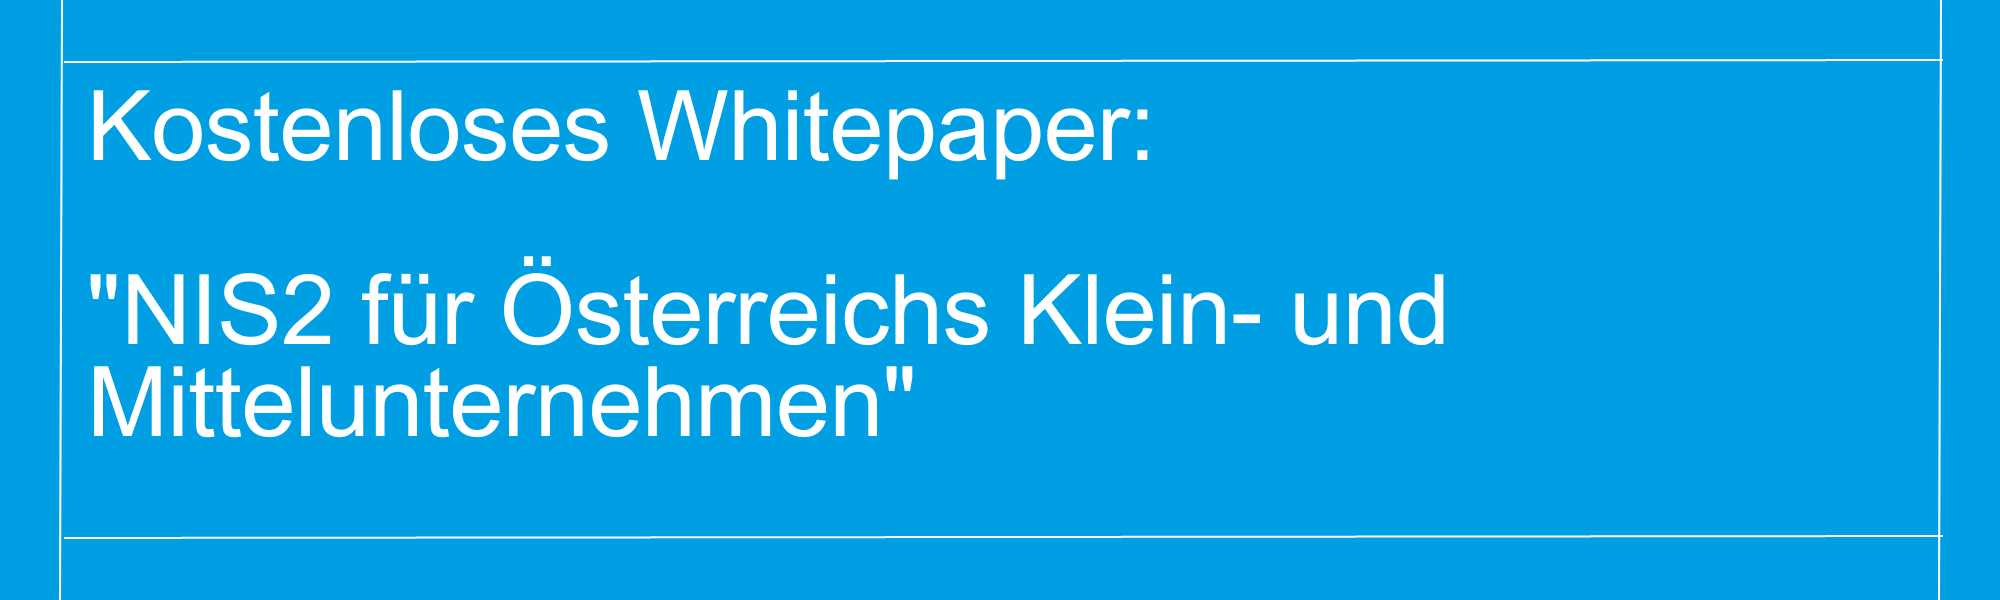 Banner für das Whitepaper "NIS2 für Österreichs Klein- und Mittelunternehmen"